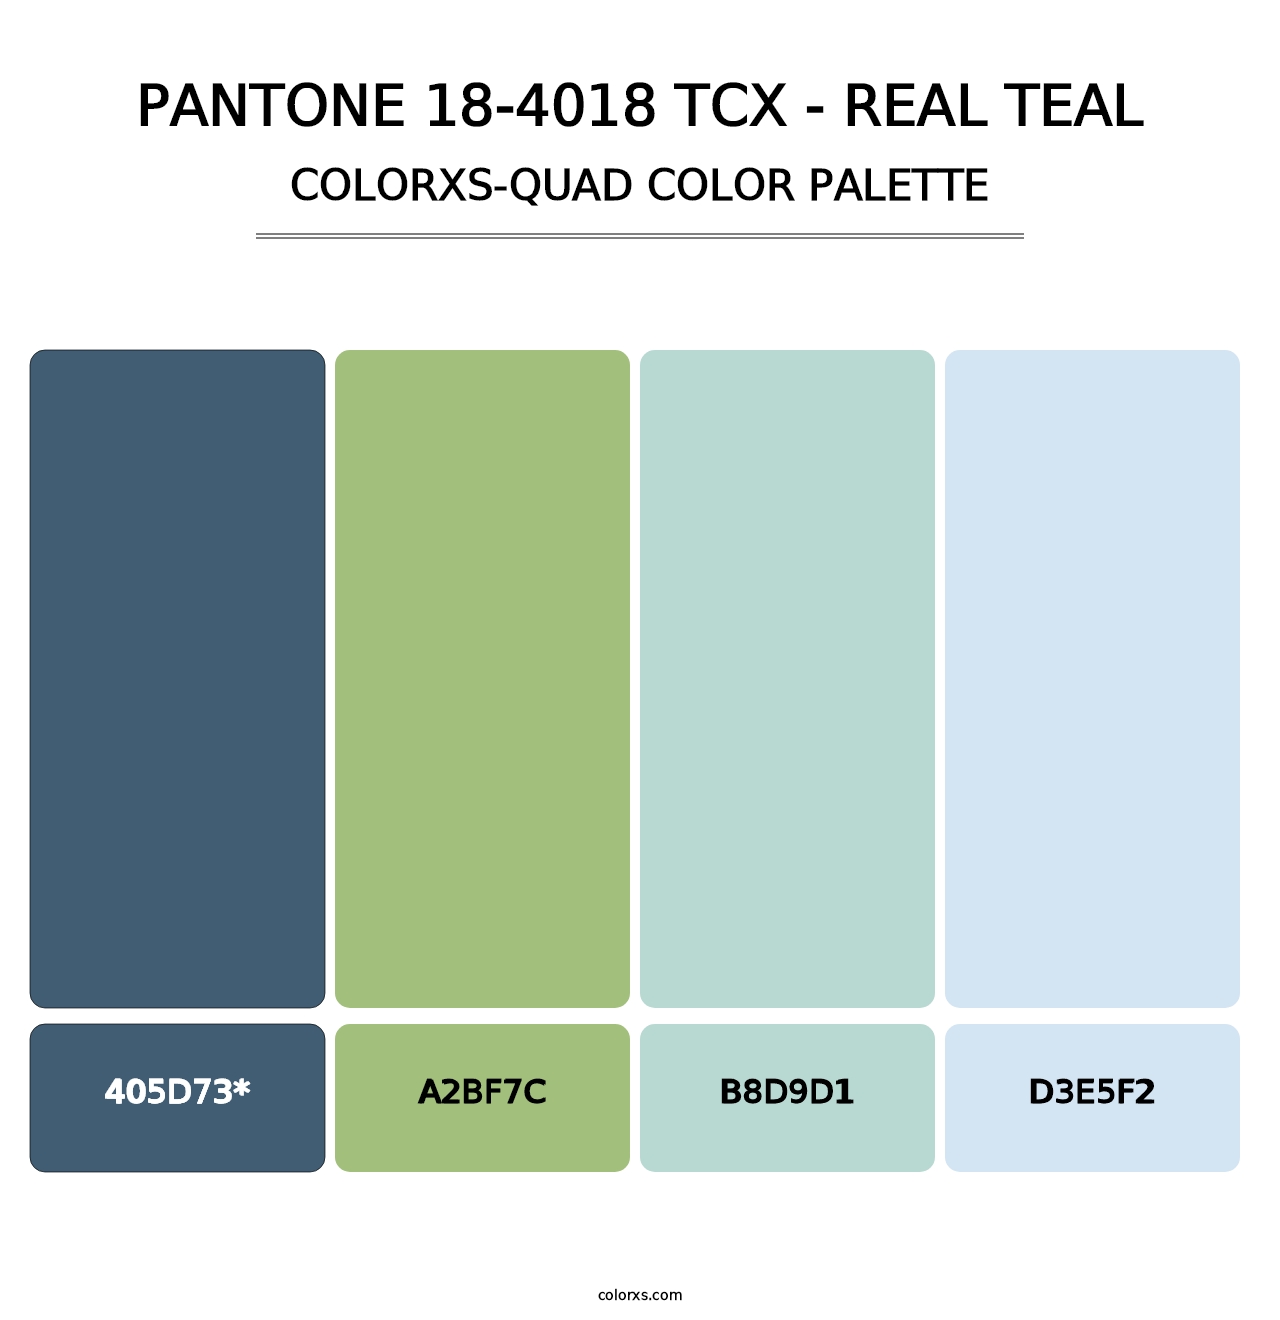 PANTONE 18-4018 TCX - Real Teal - Colorxs Quad Palette